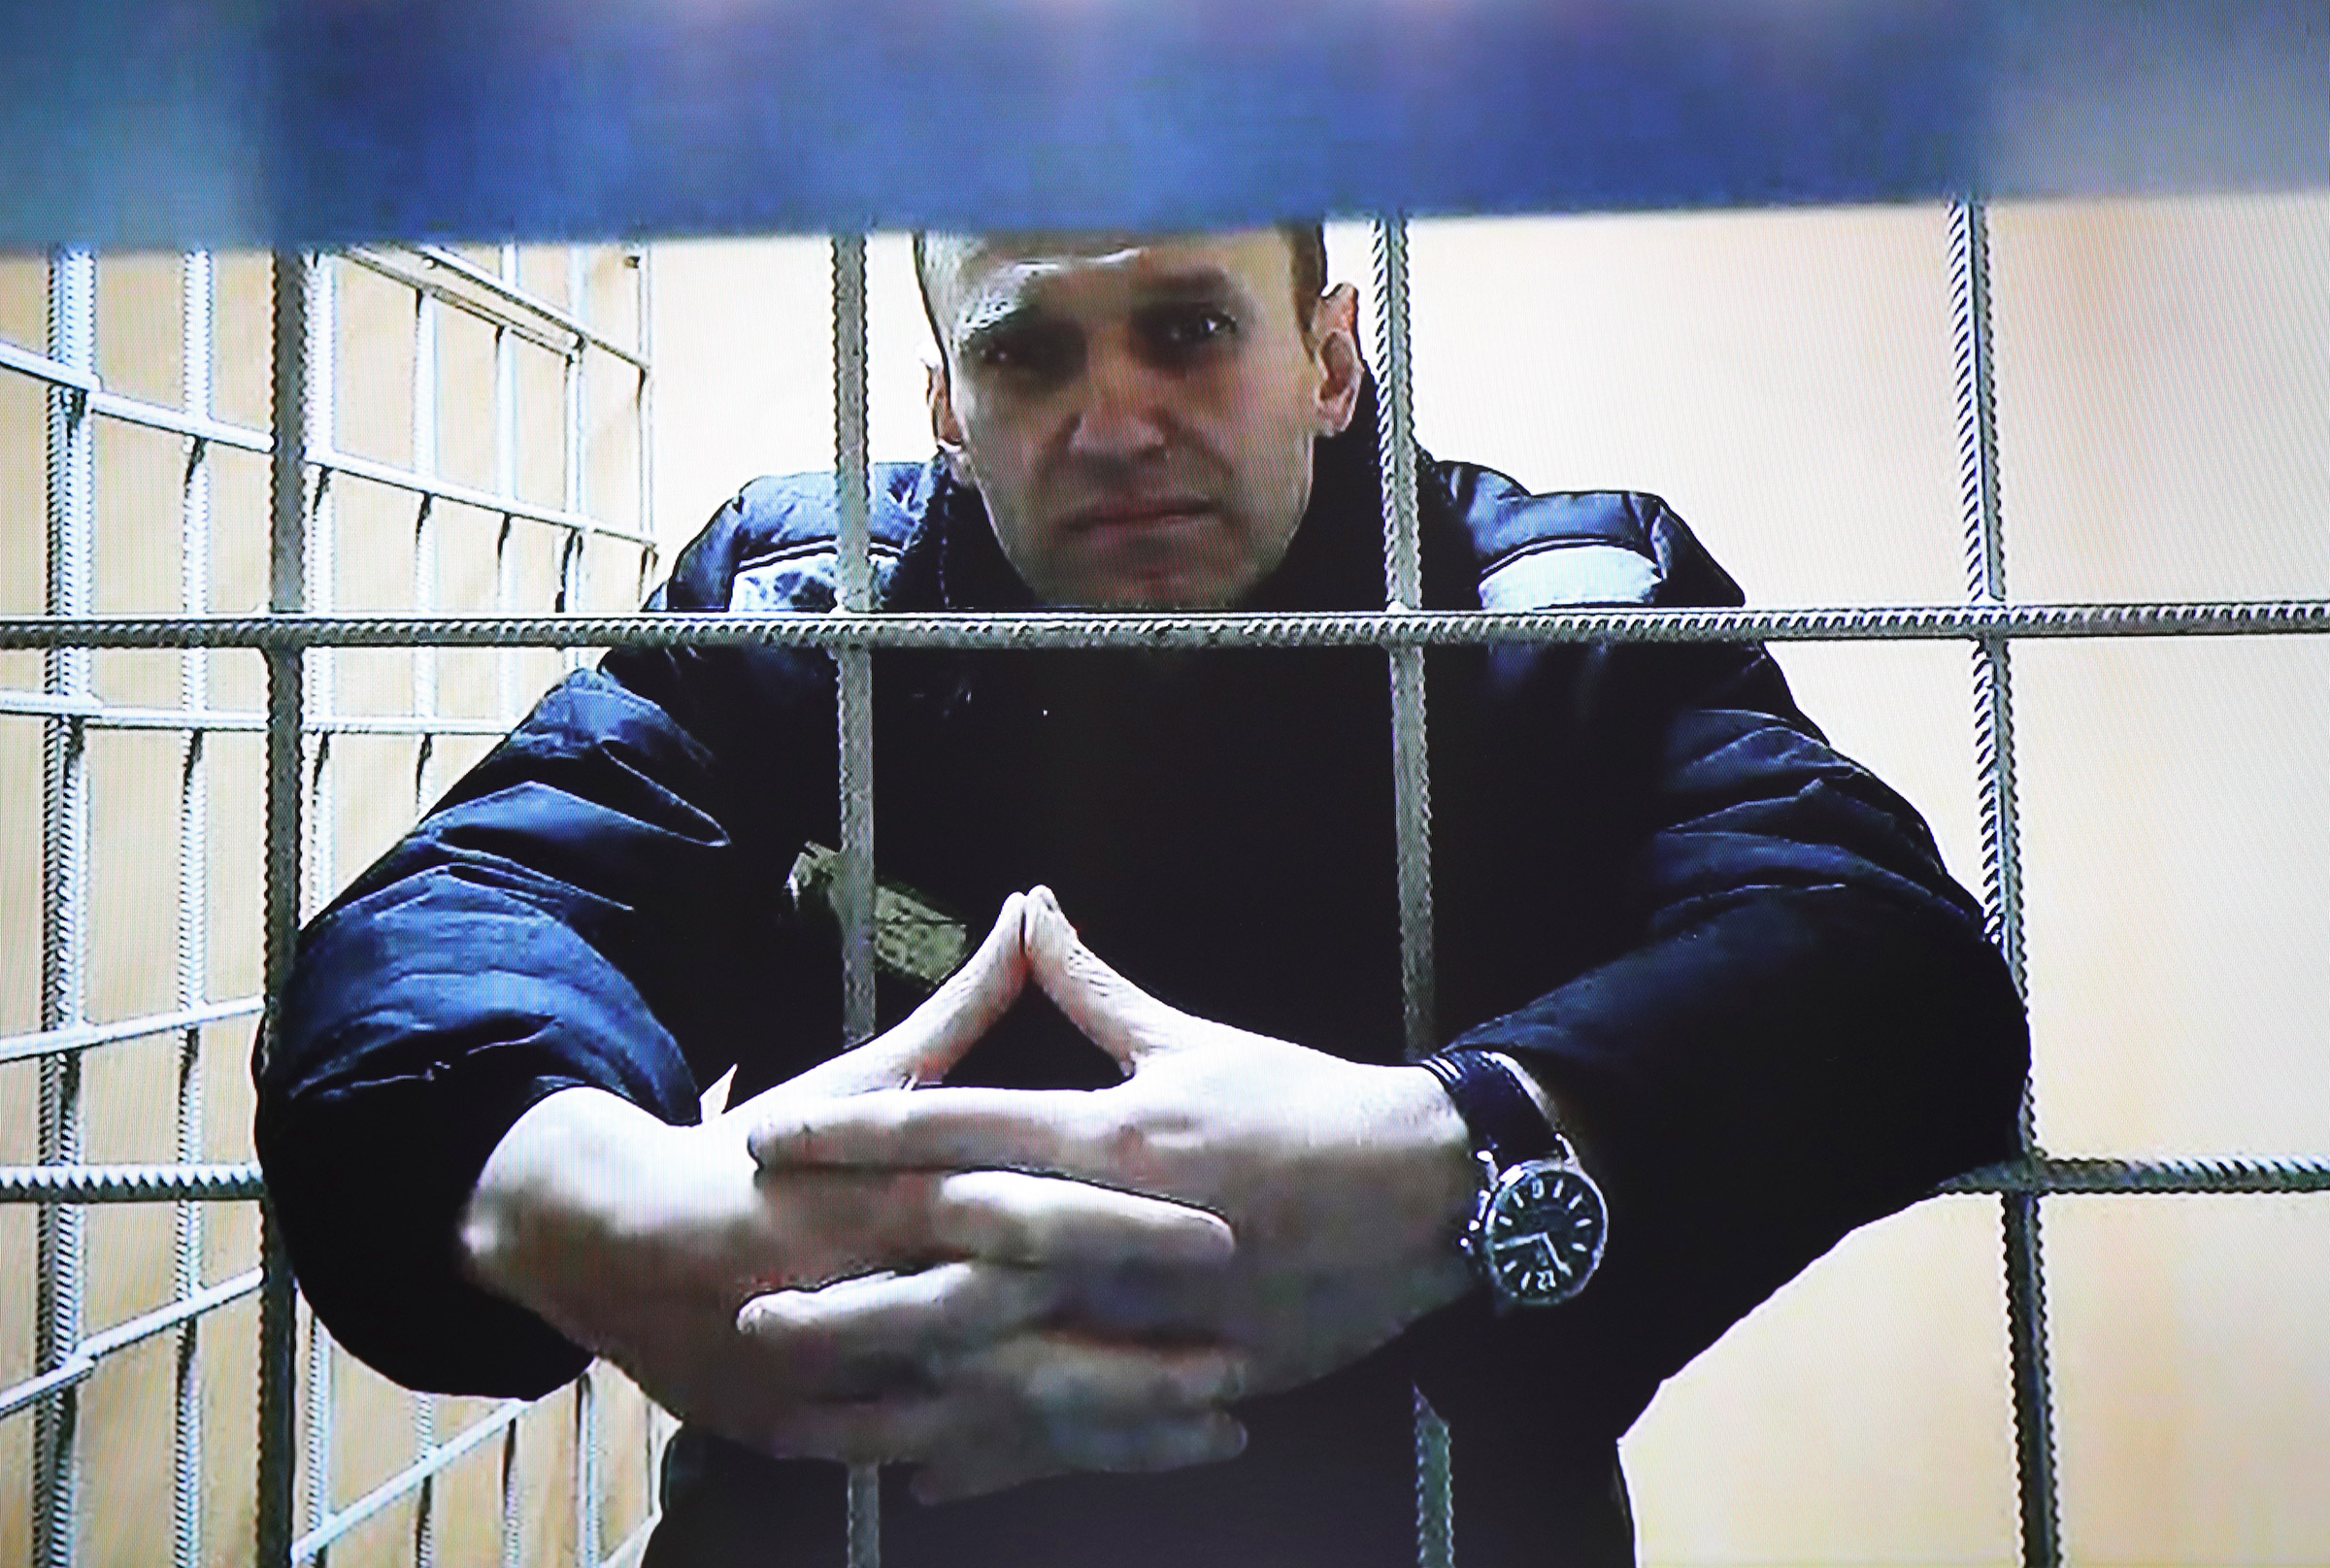 Preoccupazione per Navalny, non si hanno notizie da due giorni e in carcere si parla di 'incidente'